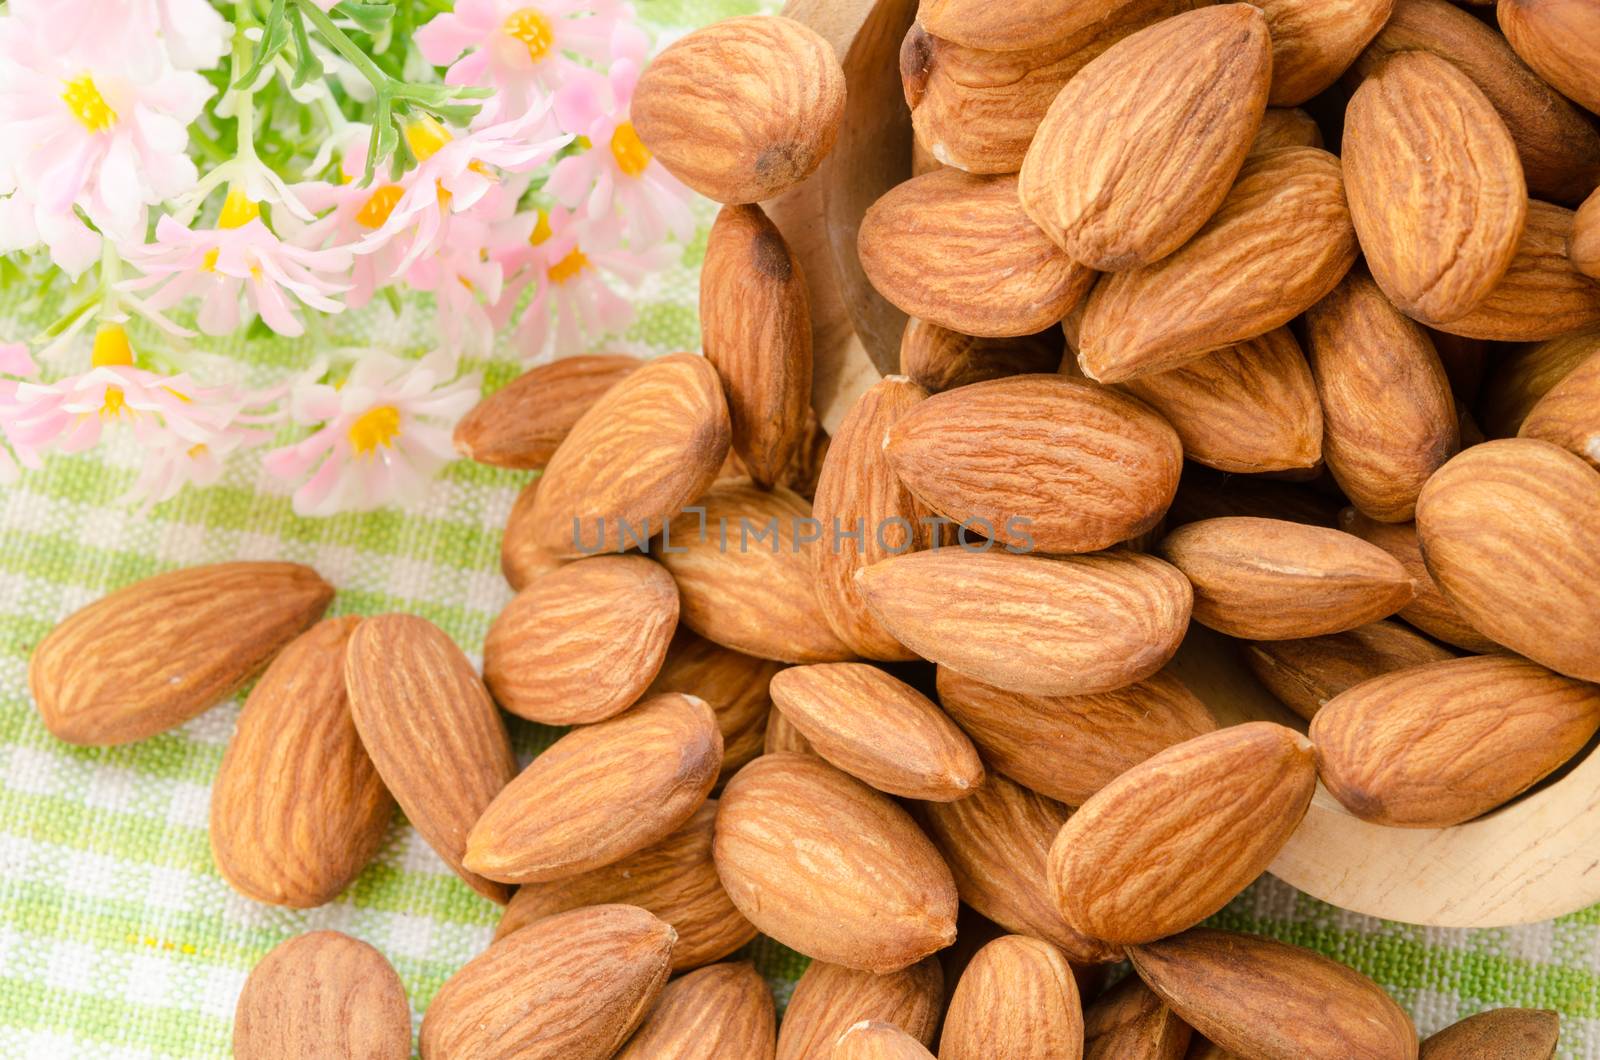 Almonds by Gamjai